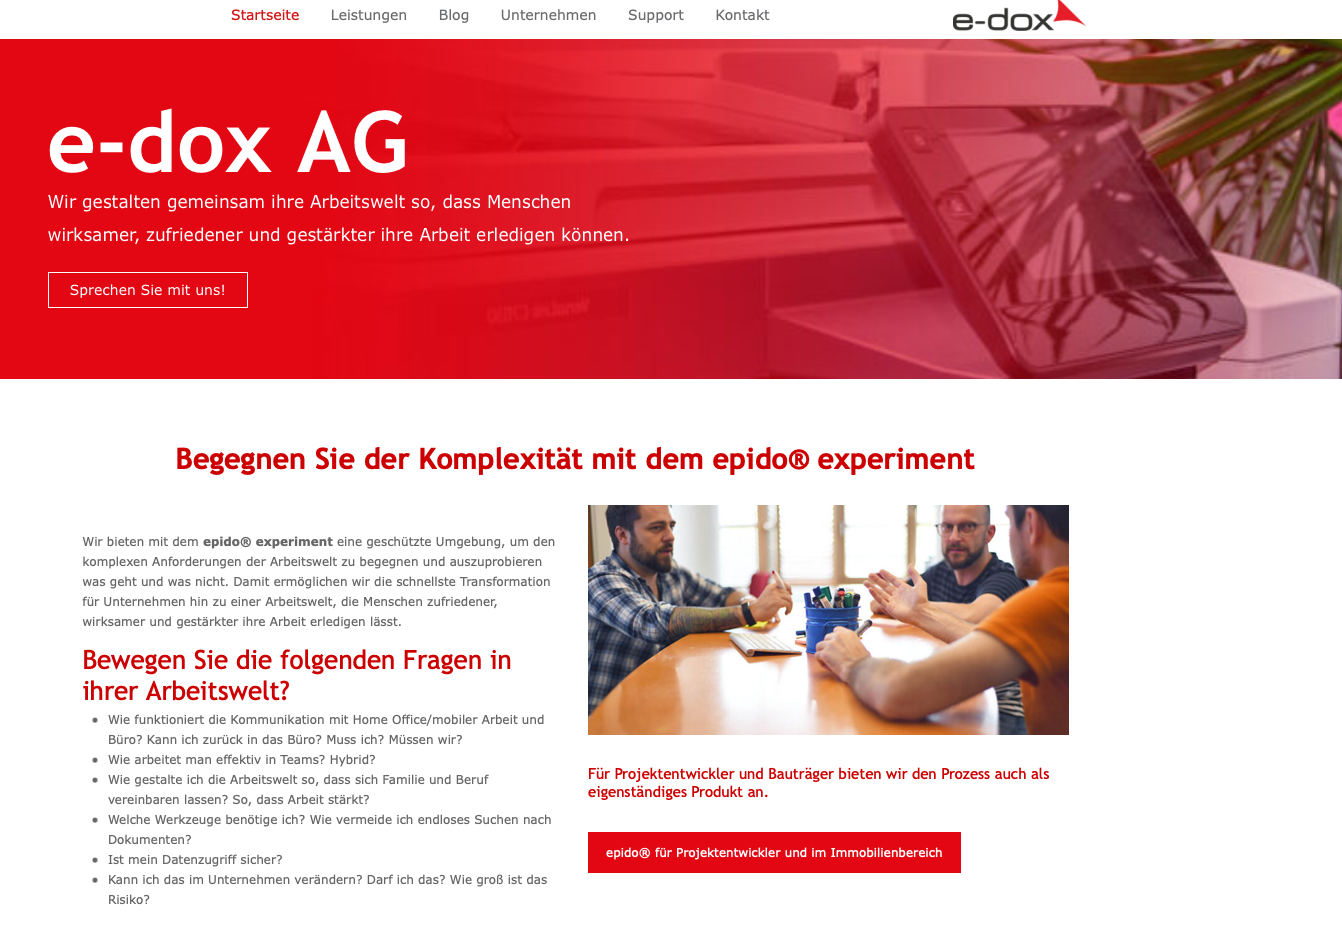 Die Startseite der e-dox AG